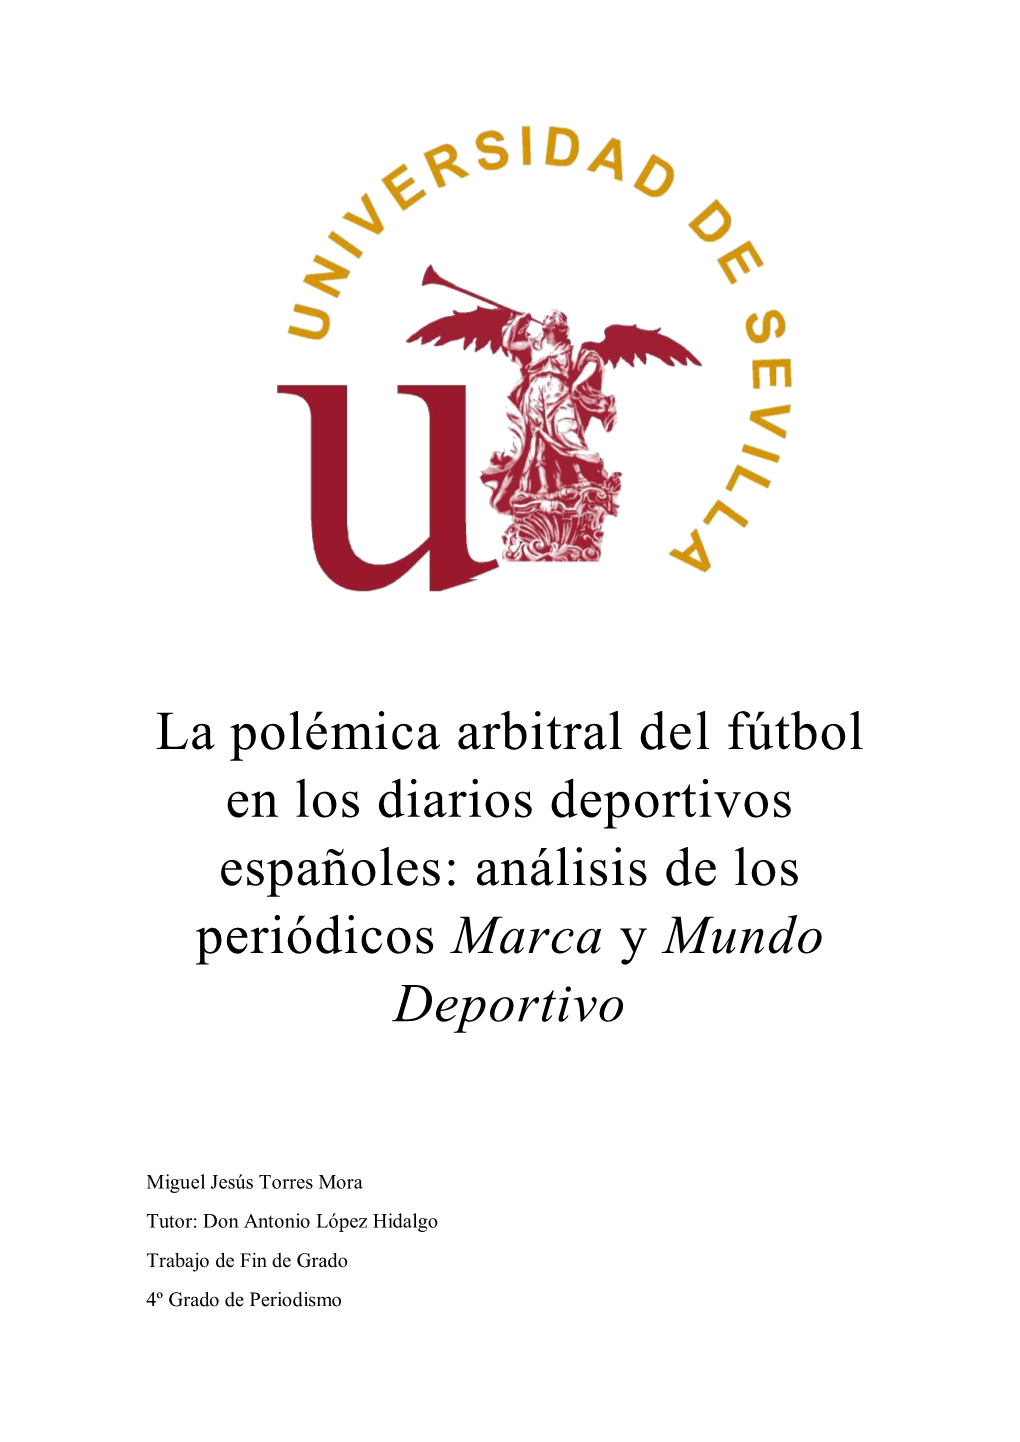 La Polémica Arbitral Del Fútbol En Los Diarios Deportivos Españoles: Análisis De Los Periódicos Marca Y Mundo Deportivo